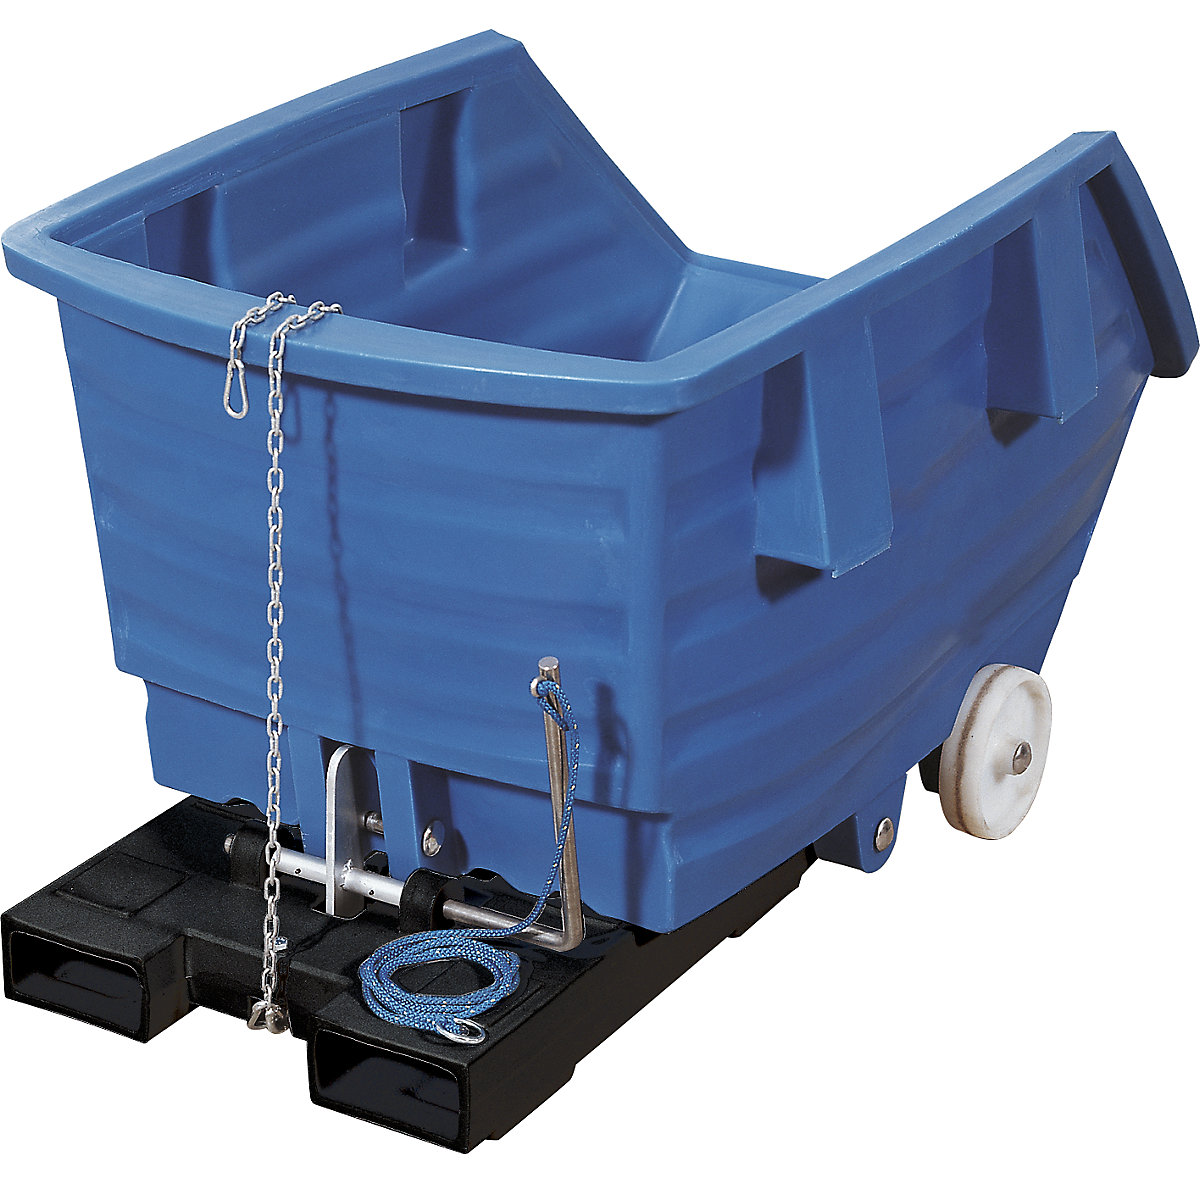 Kippbehälter aus Polyethylen, mit Einfahrtaschen und Rollen, Volumen 0,3 m³, blau-6